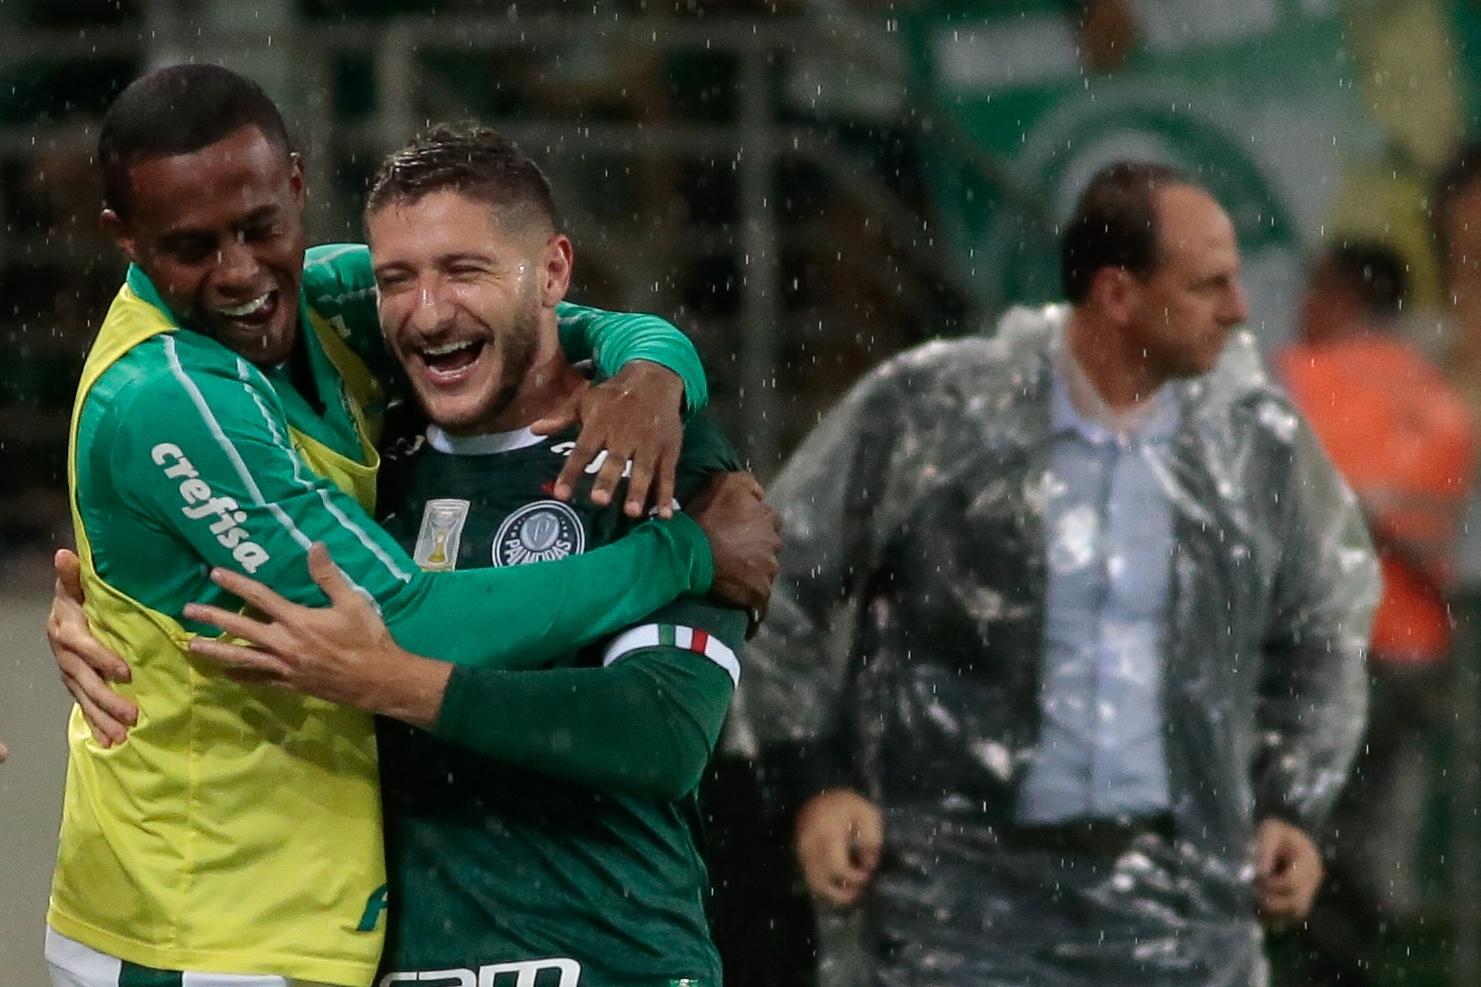 Palmeiras arranca empate com o Fortaleza e segura liderança no saldo de  gols - Placar - O futebol sem barreiras para você